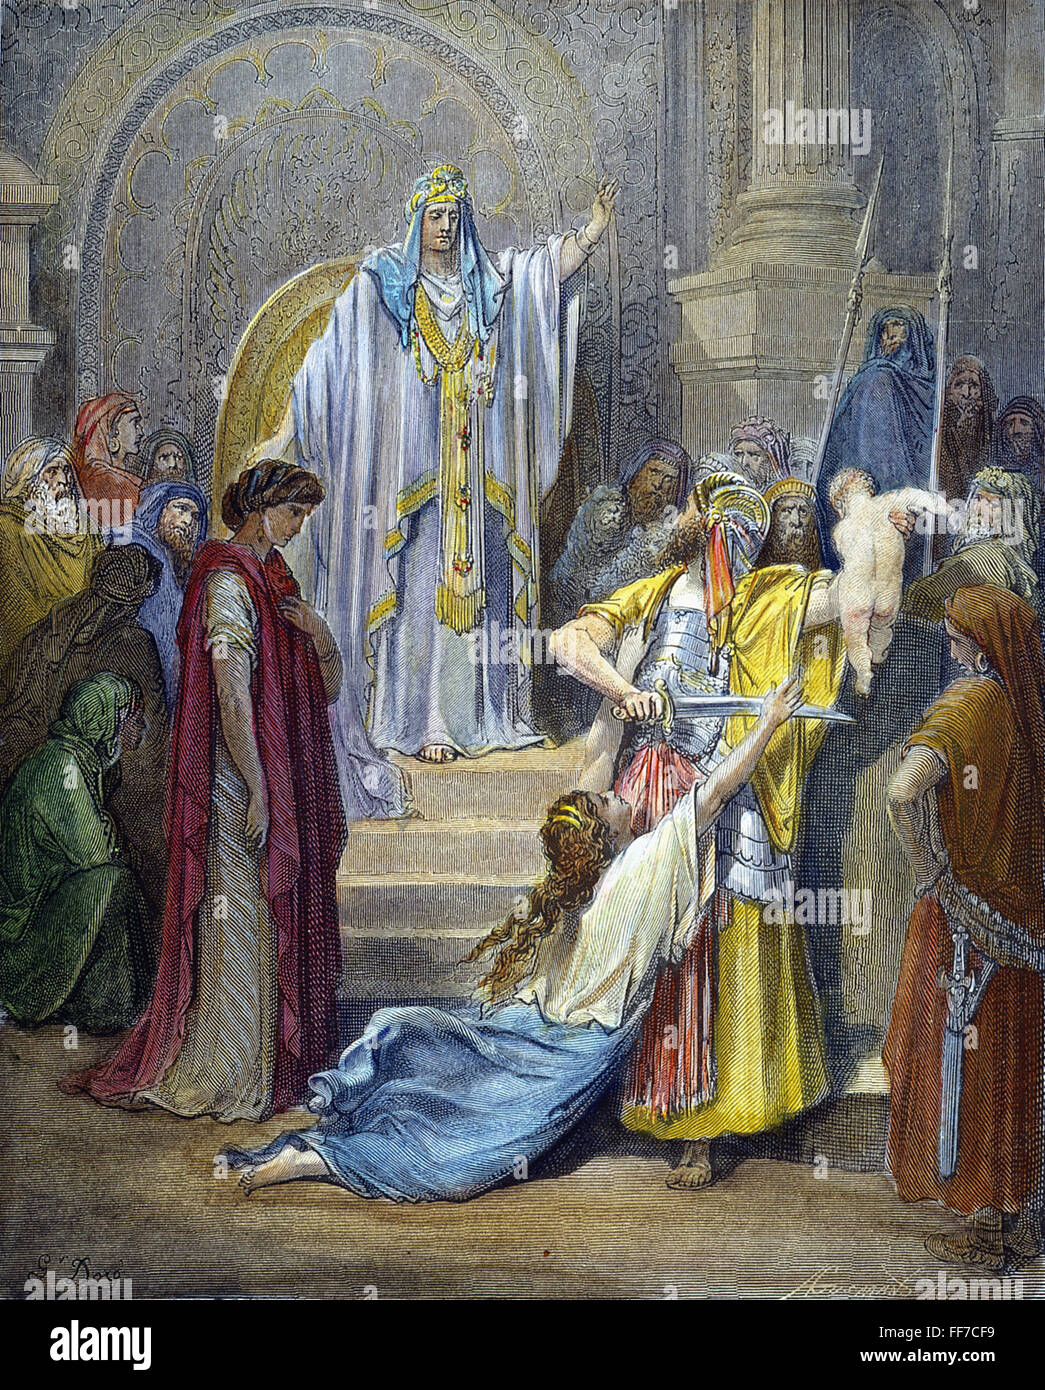 URTEIL DES SALOMO. / n (1. Könige 3: 24-27). Holzstich, 19. Jahrhundert, nach Gustave DorΘ. Stockfoto